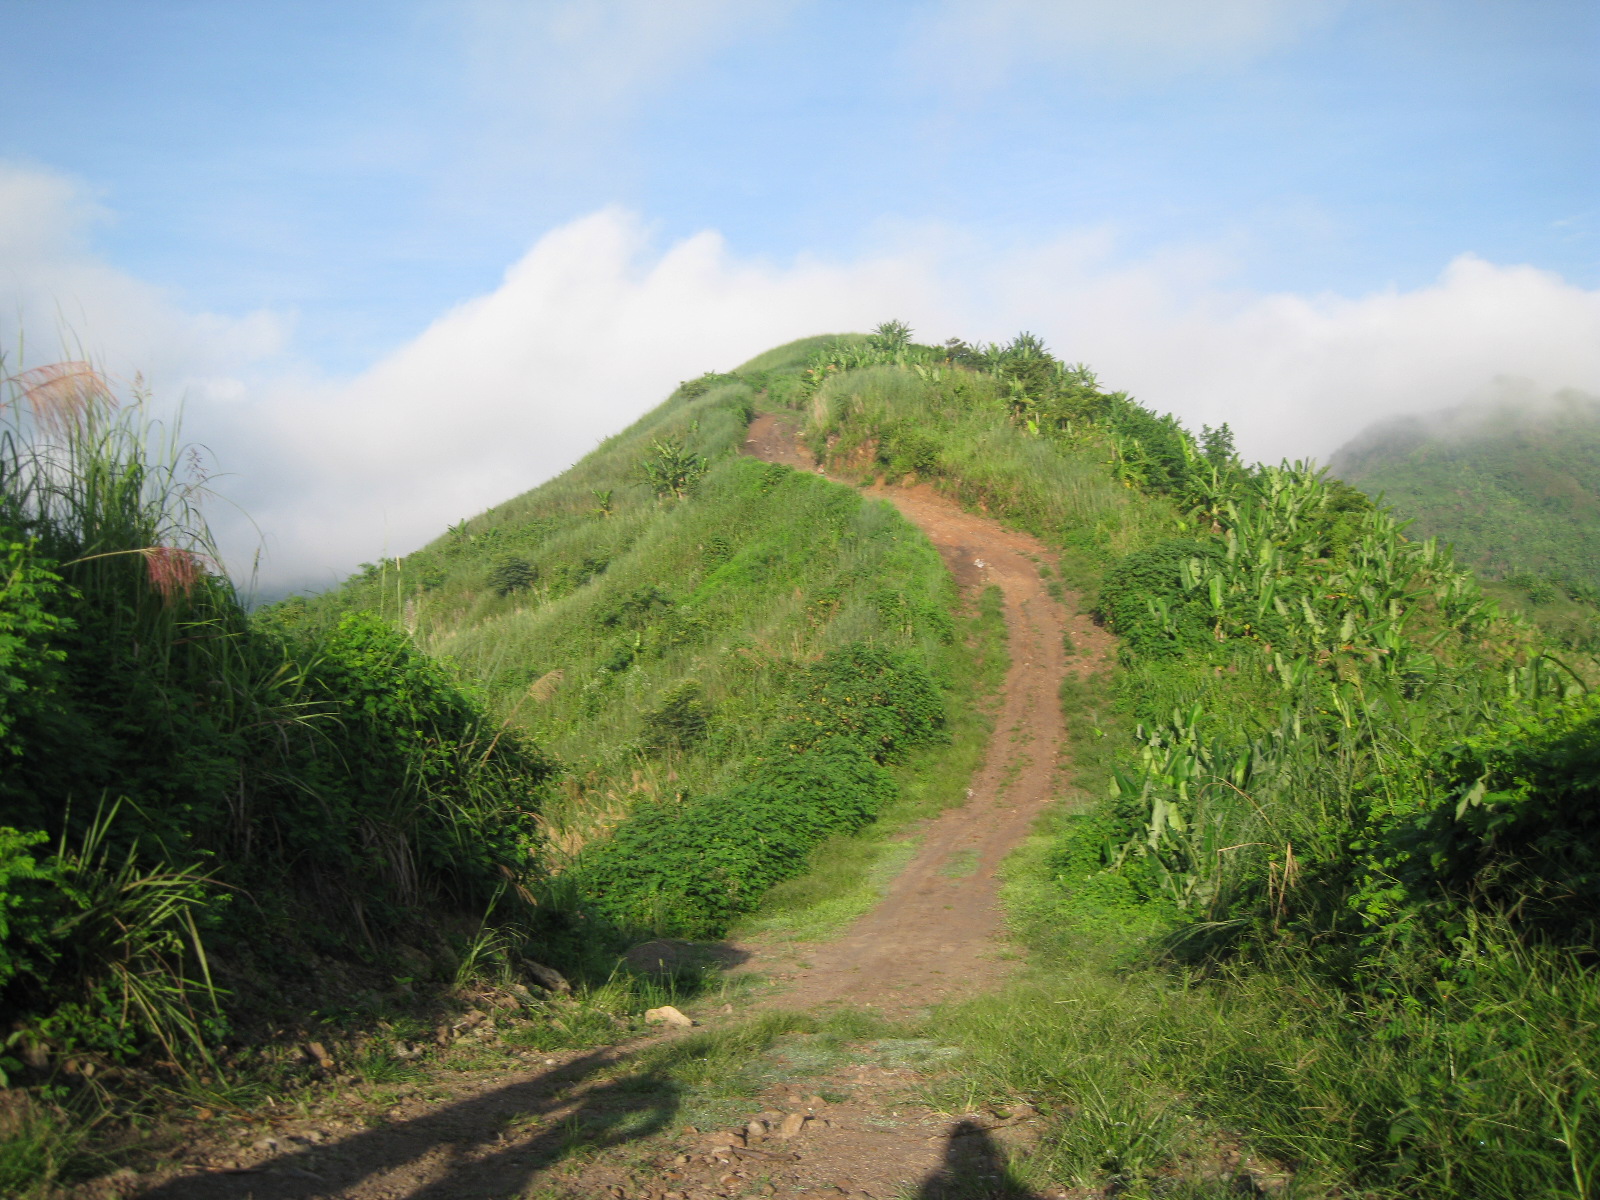 Uphill